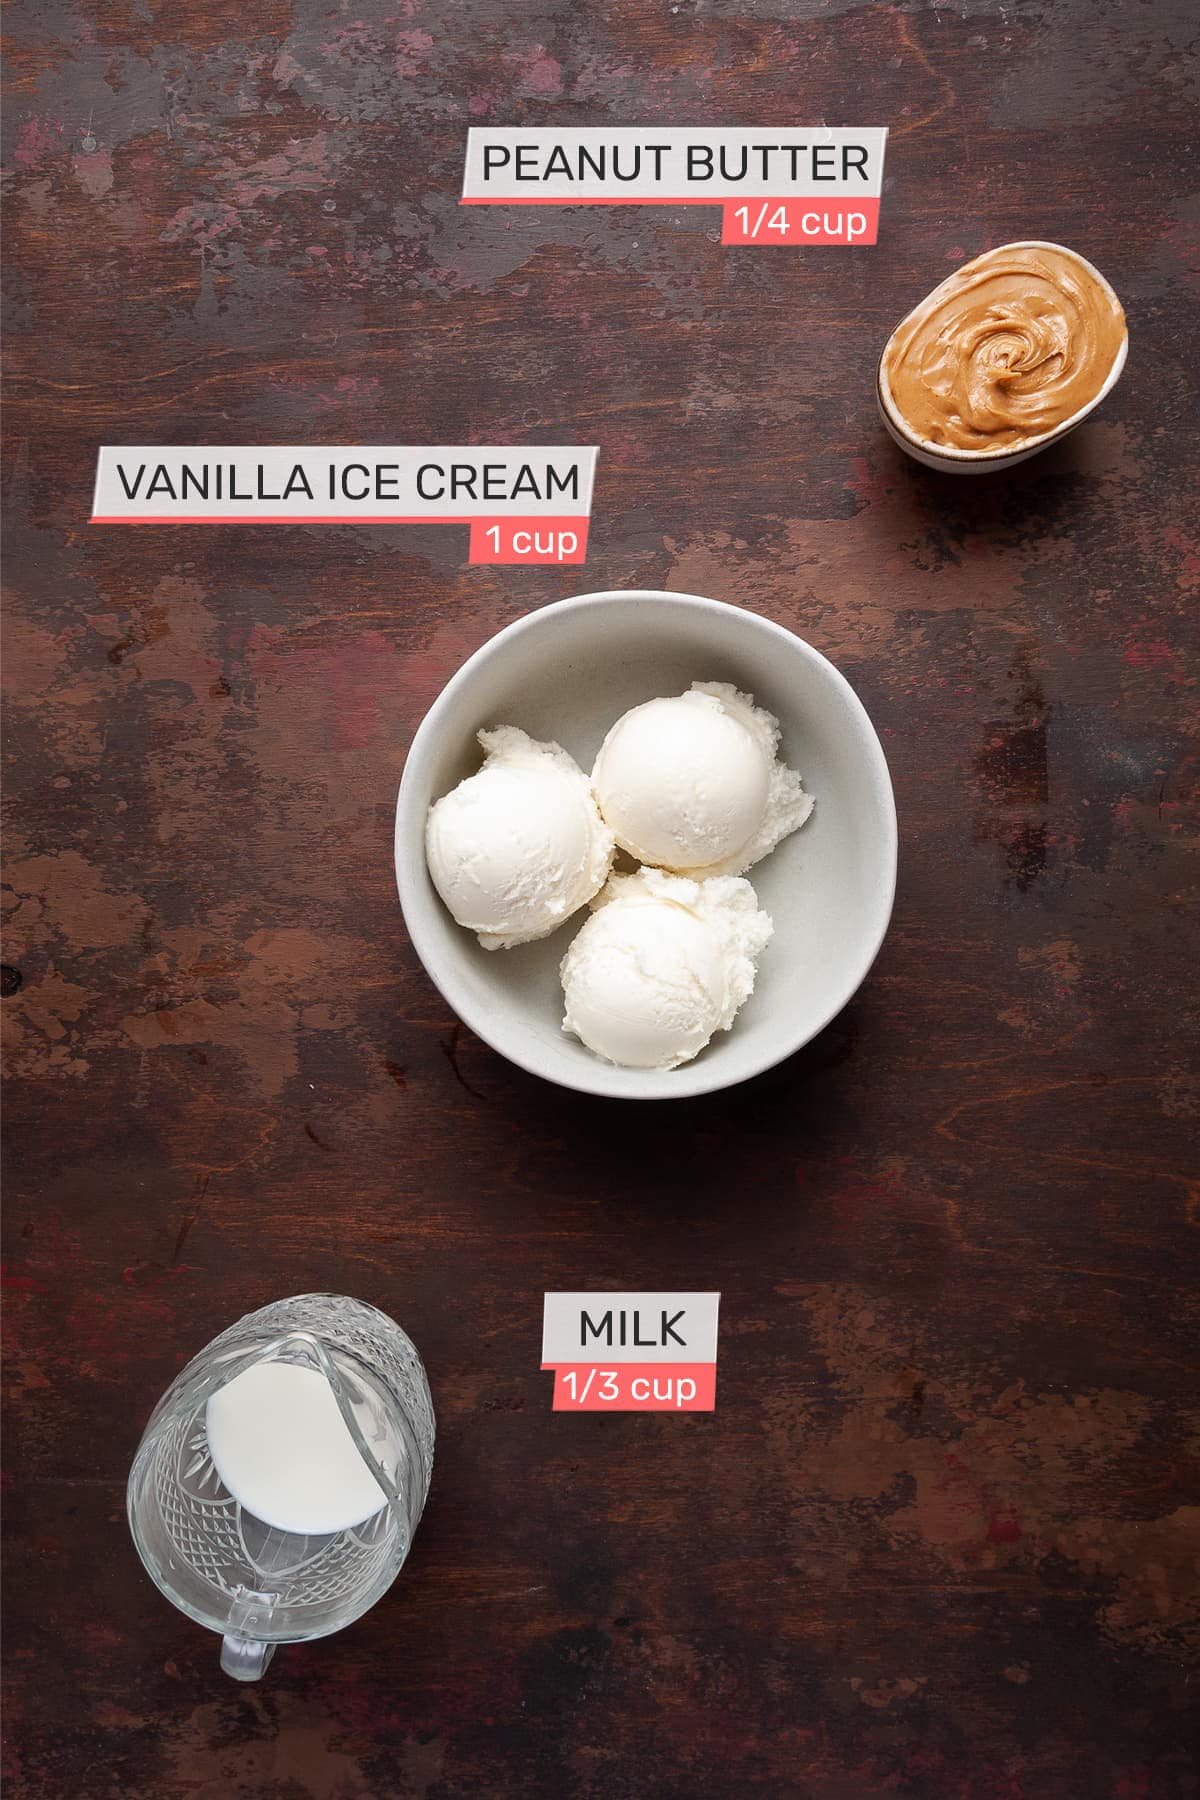 Vanilla ice cream, peanut butter and milk